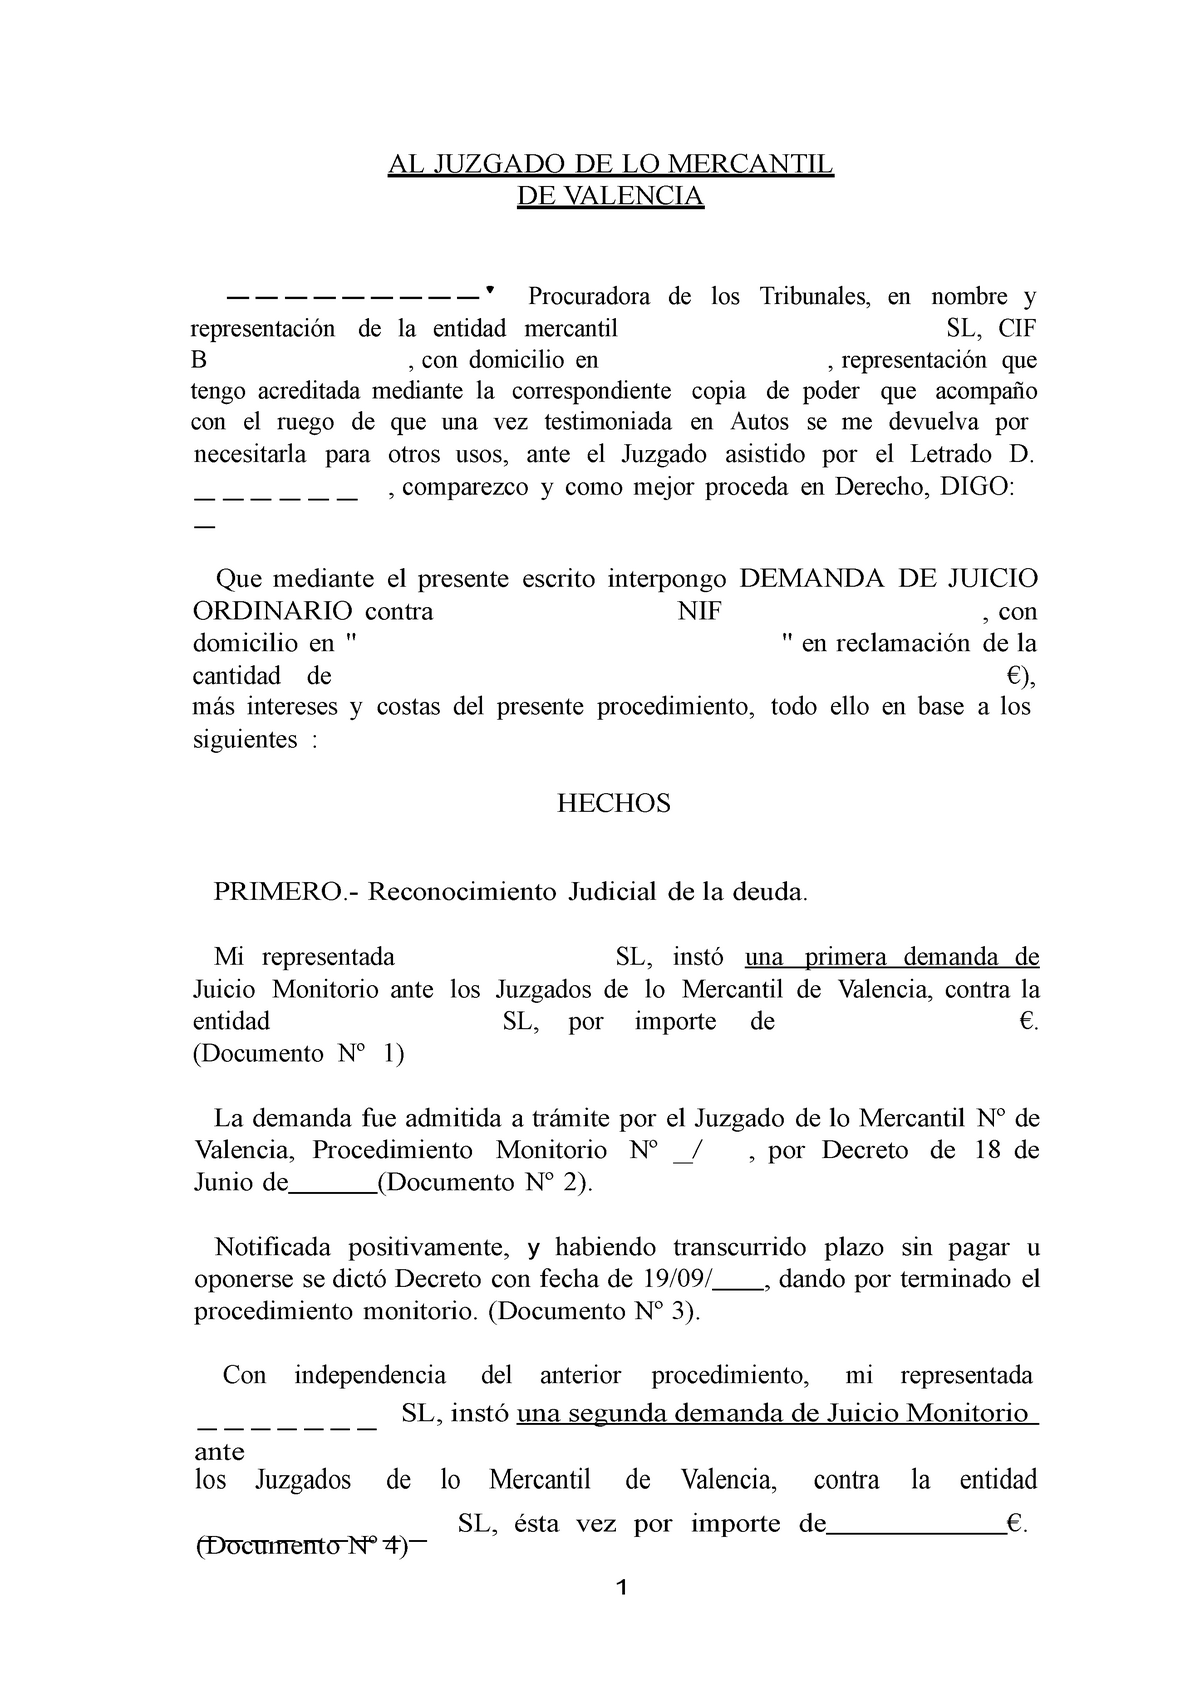 Modelo Demanda juicio Ordinario - 1 AL JUZGADO DE LO MERCANTIL DE VALENCIA  -' Procuradora de los - Studocu